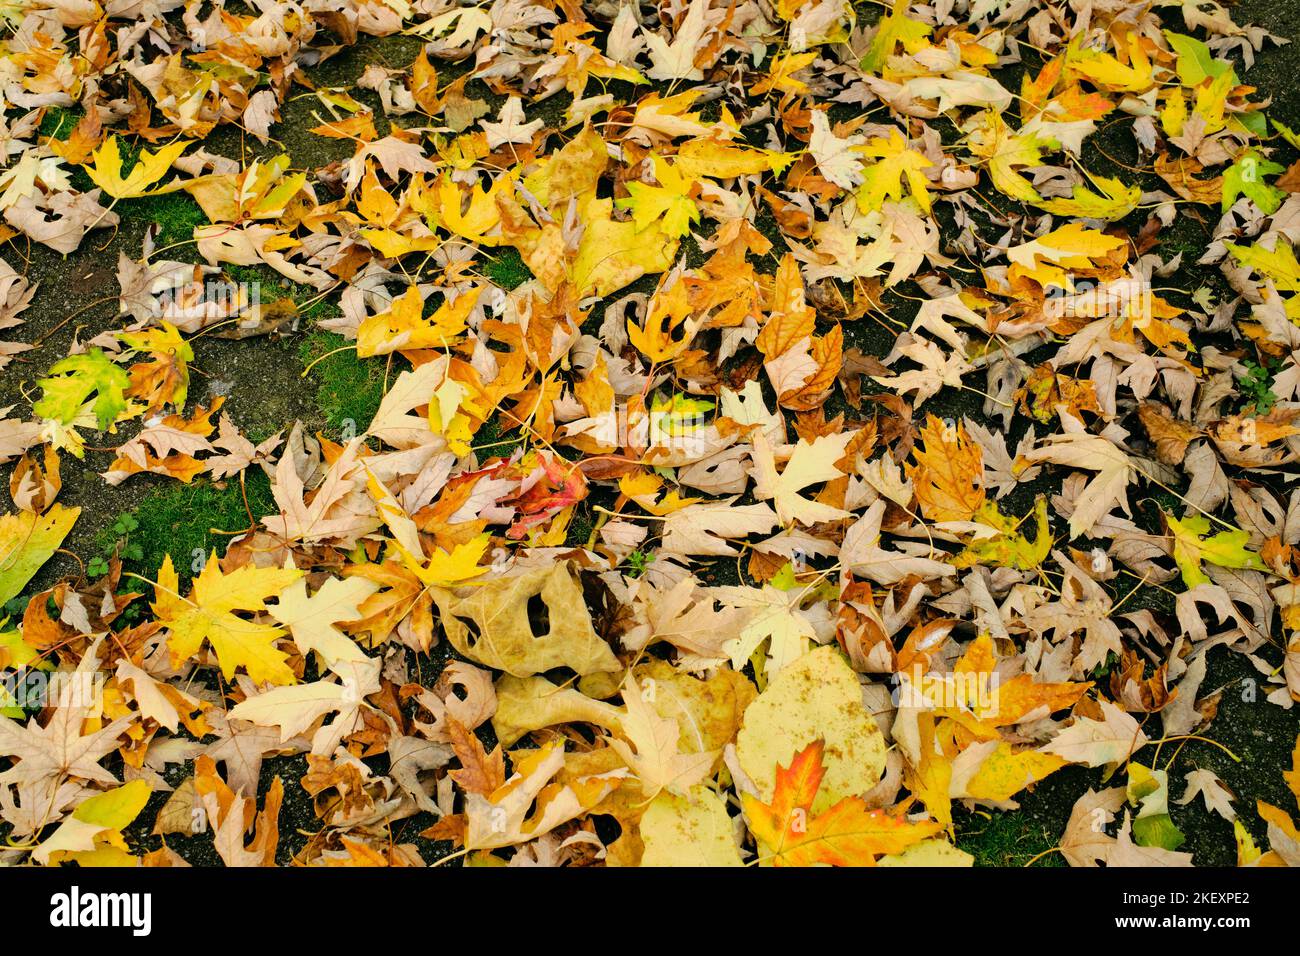 Bunte Herbstblätter liegen auf dem Boden in einer bunten Matte aus gelben, braunen, grünen, roten und orangen Tönen Stockfoto